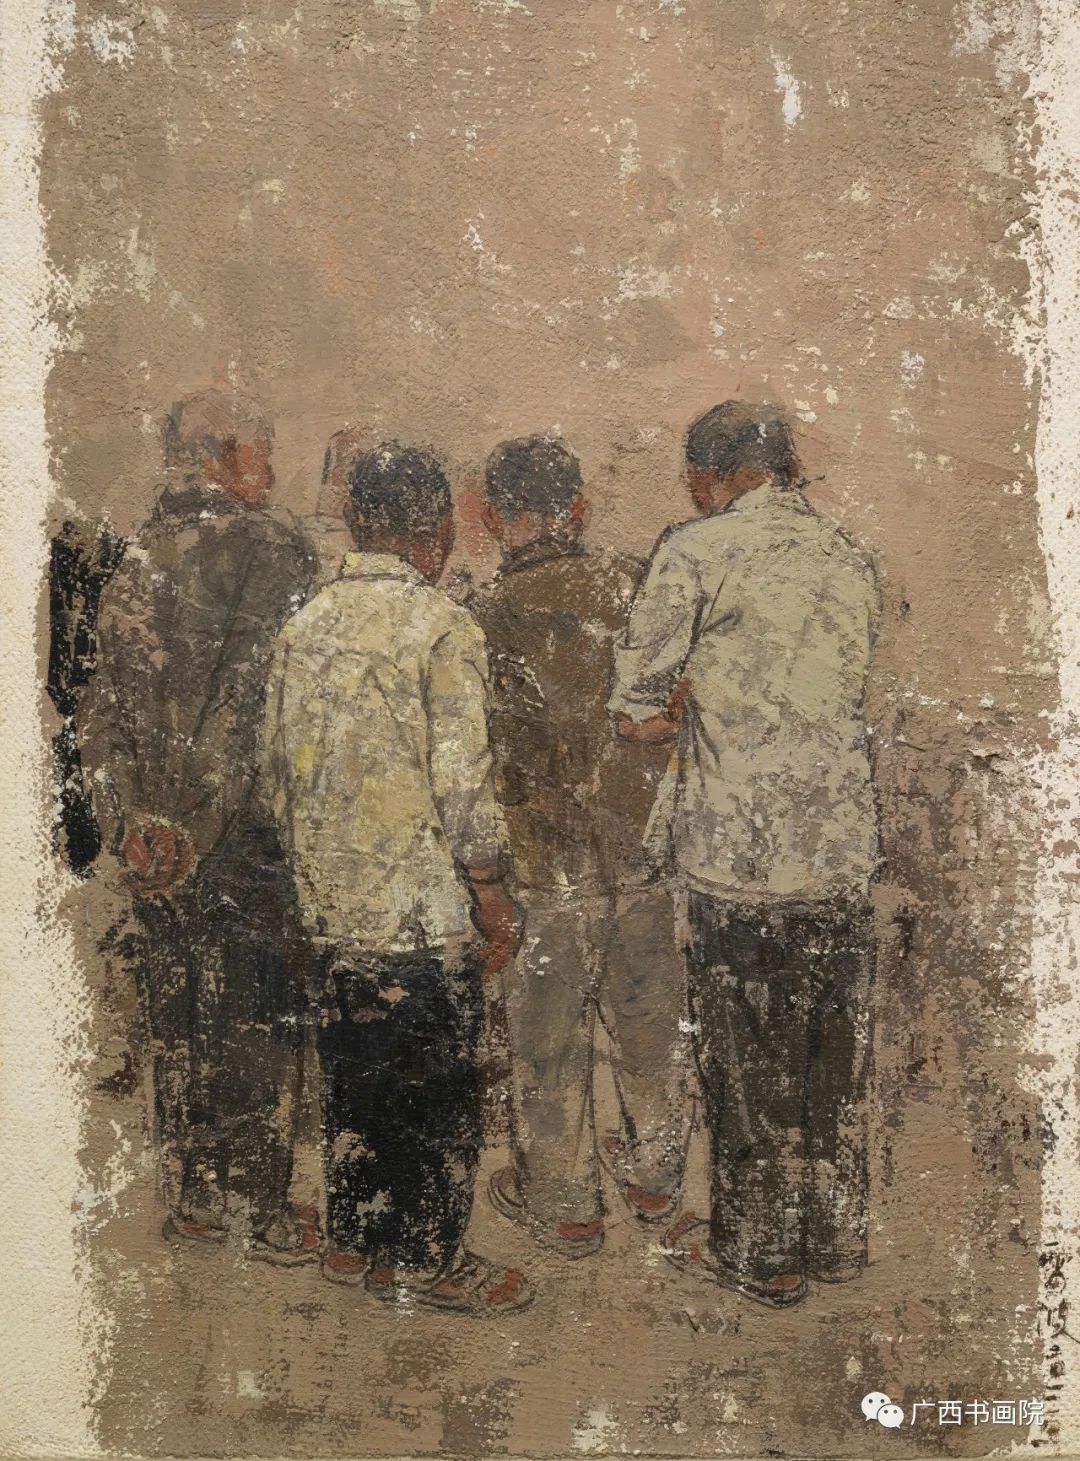 “迹——雷波油画展”7月5日将于广西书画院开展，展期持续至7月25日